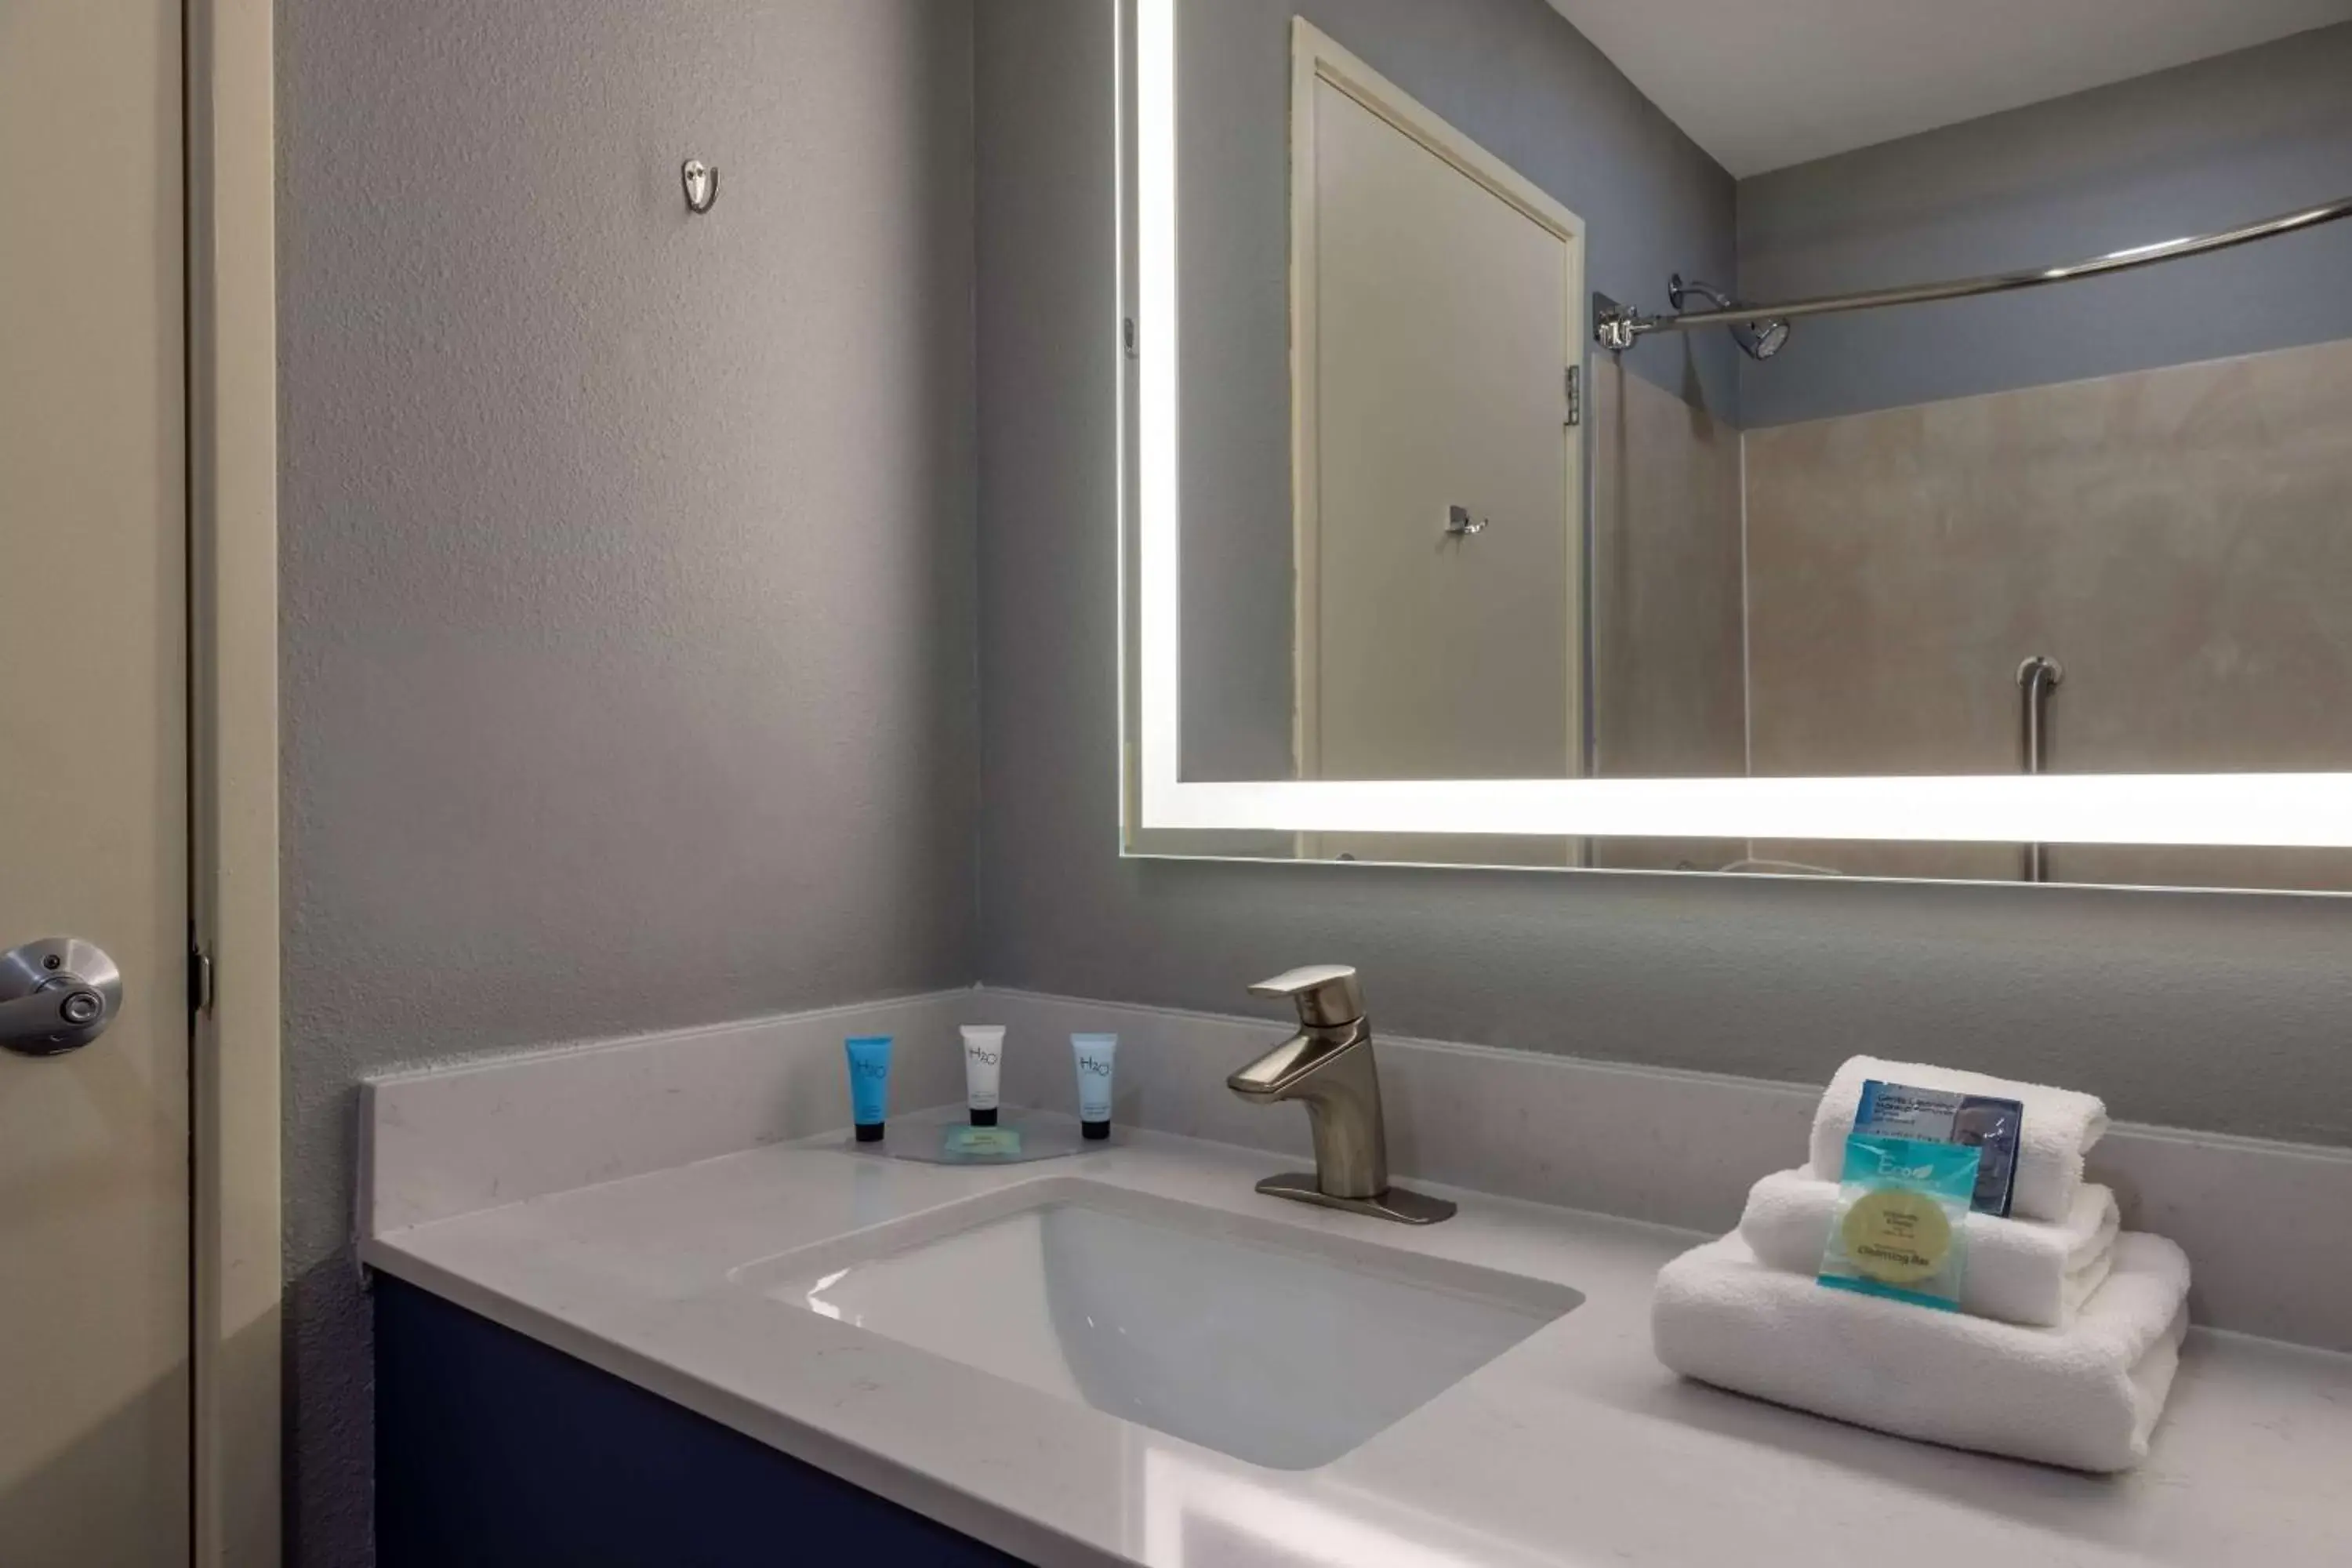 TV and multimedia, Bathroom in AmericInn by Wyndham Duluth